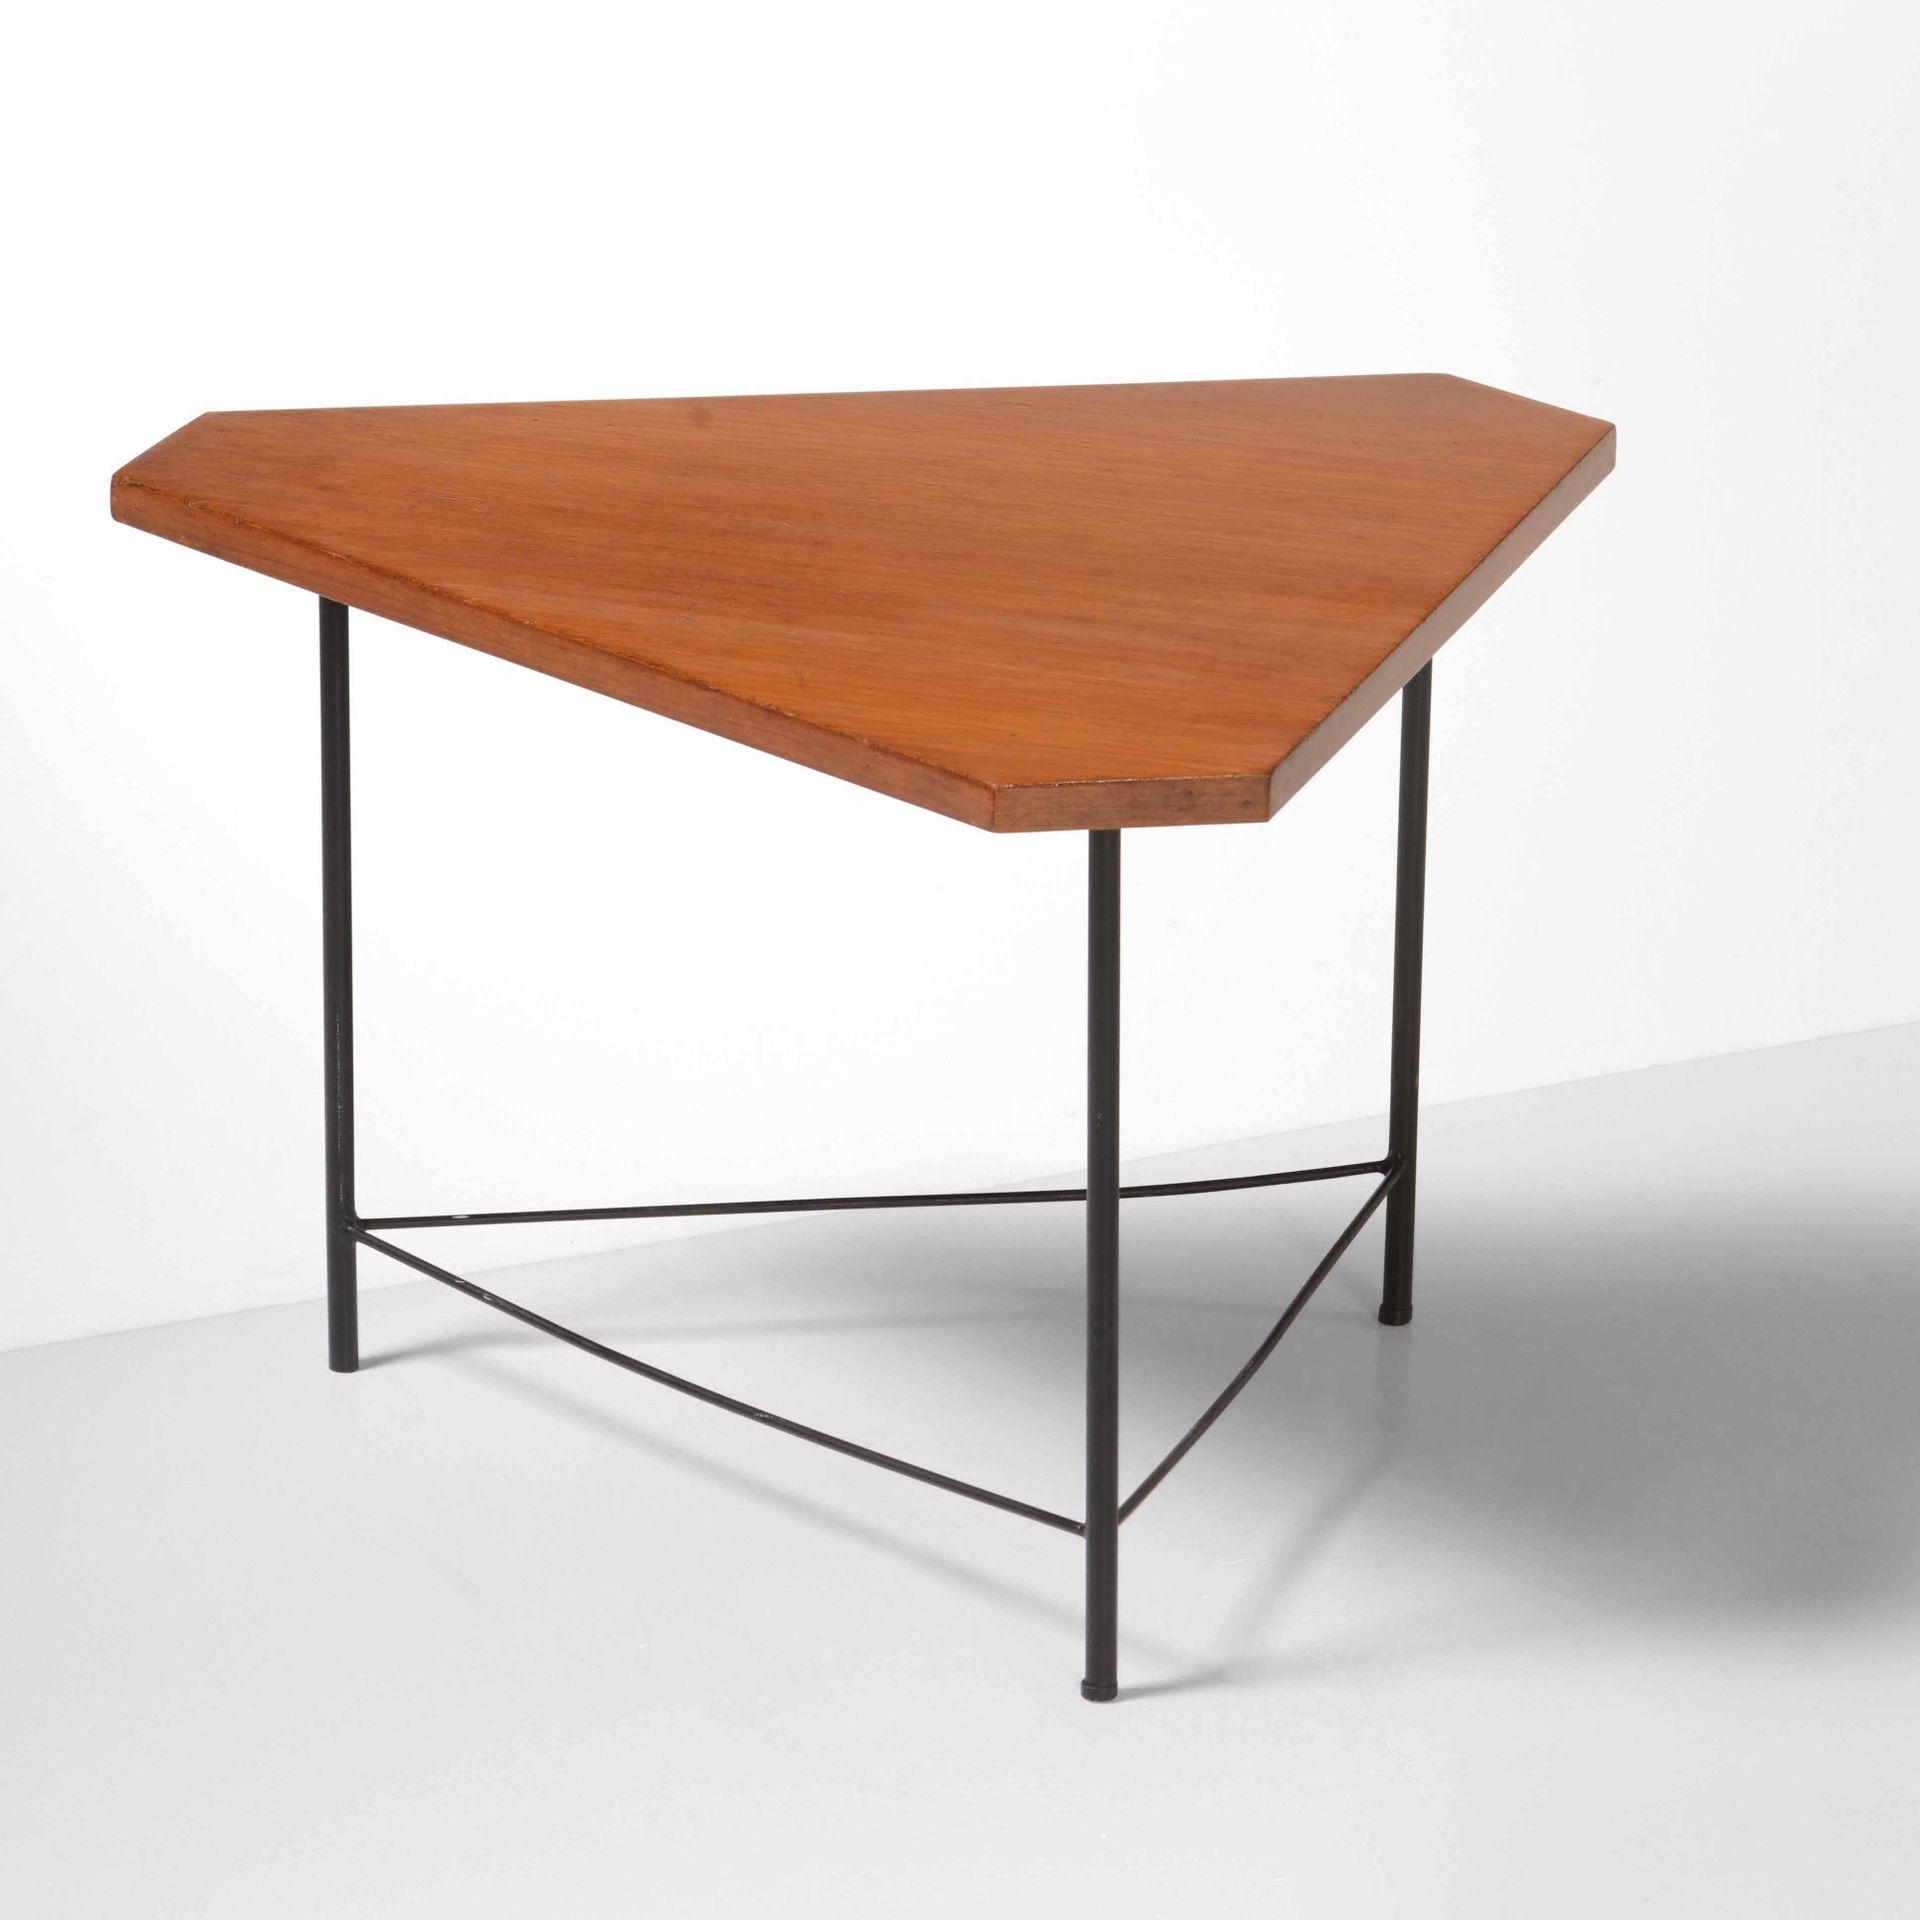 ISA, 漆面金属框架和木质桌面的矮桌。原始标签。伊萨制作，约1950年，cm 60x52x37